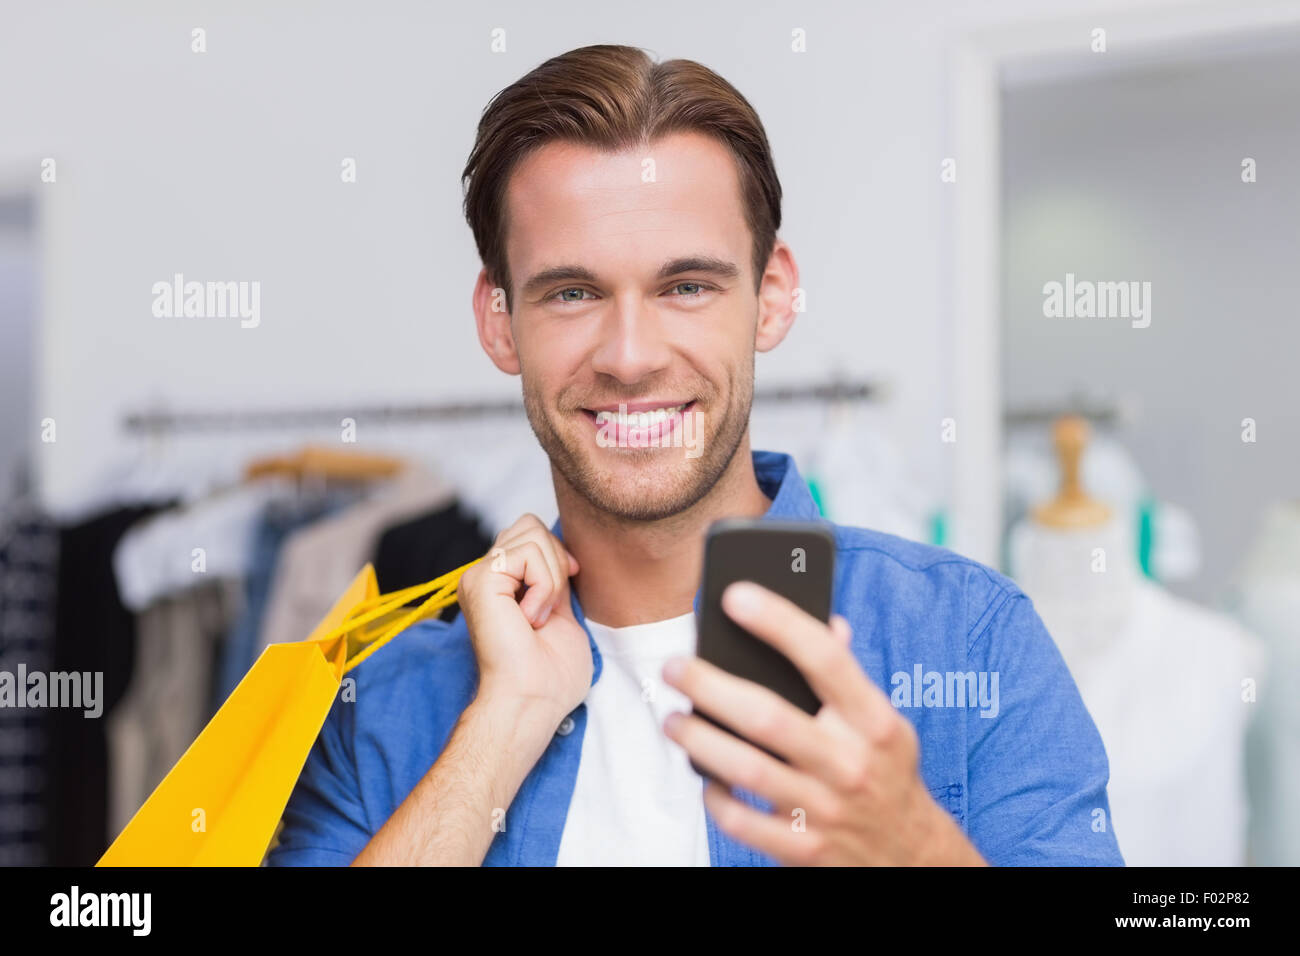 Un hombre sonriente con bolsas de compras busca en su smartphone Foto de stock